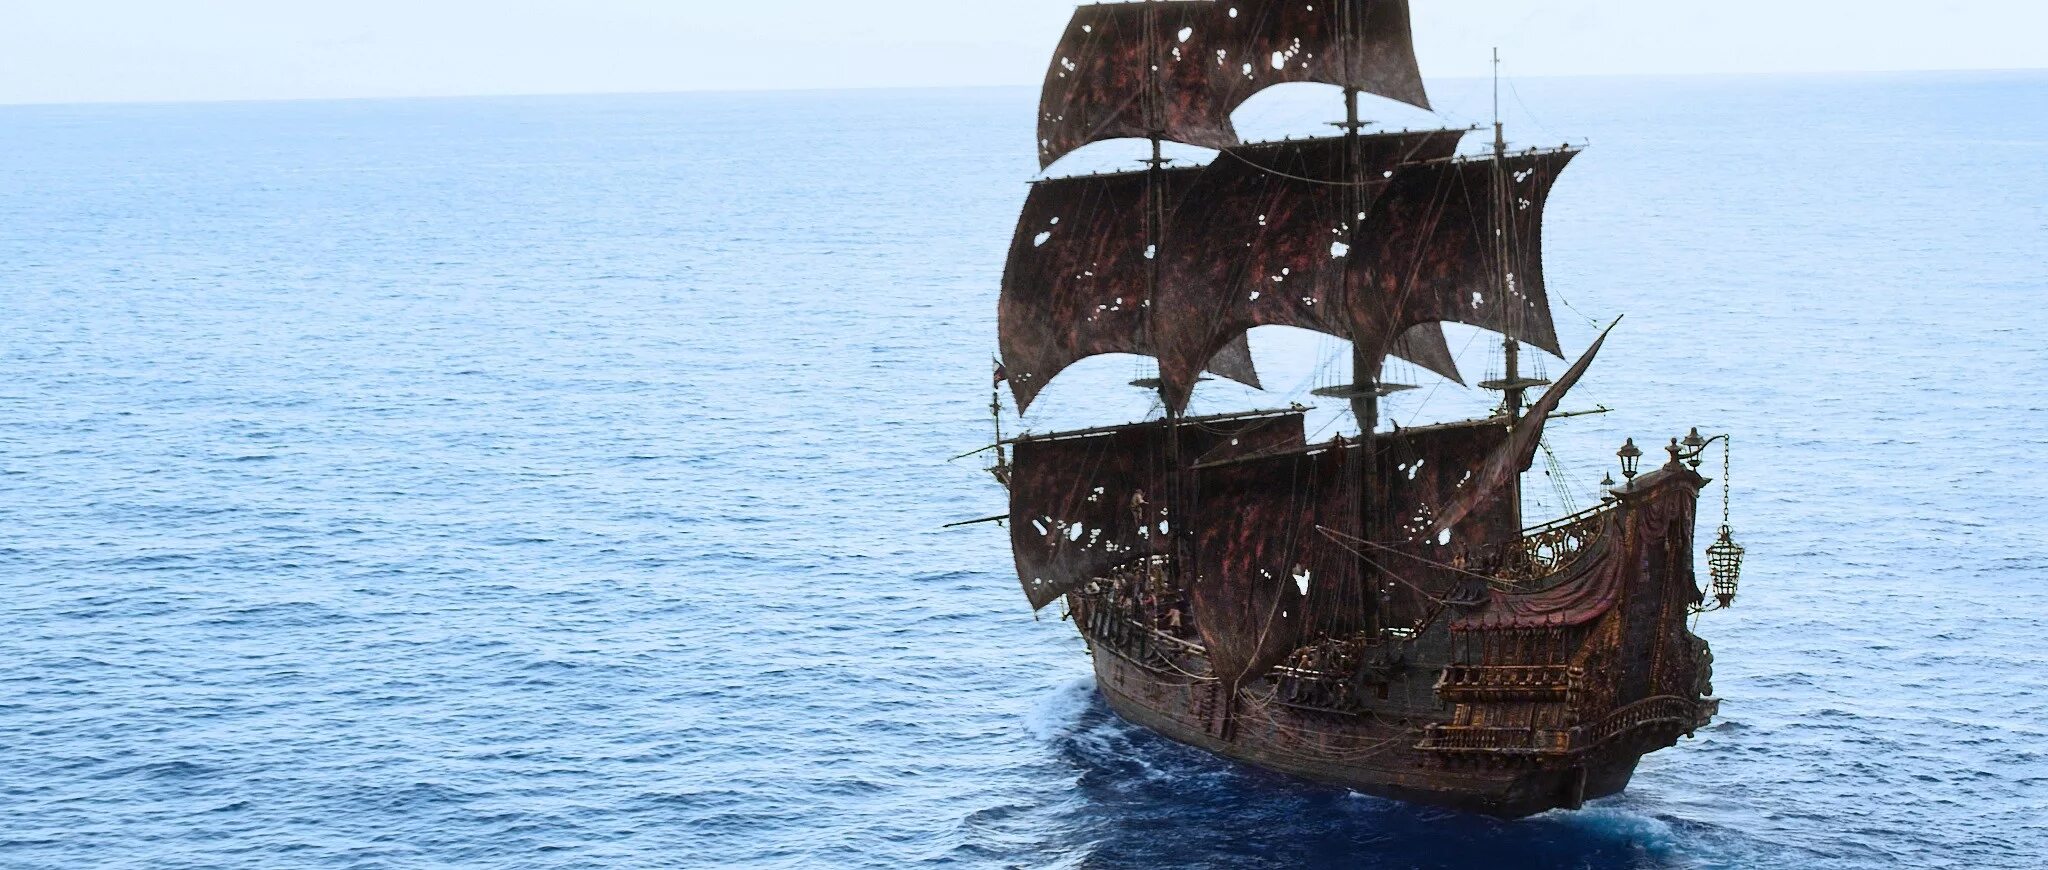 Черный корабль пиратов. Чёрная Жемчужина корабль пираты Карибского моря. Месть королевы Анны корабль пираты Карибского моря. Чёрная Жемчужина корабль из пиратов Карибского моря.